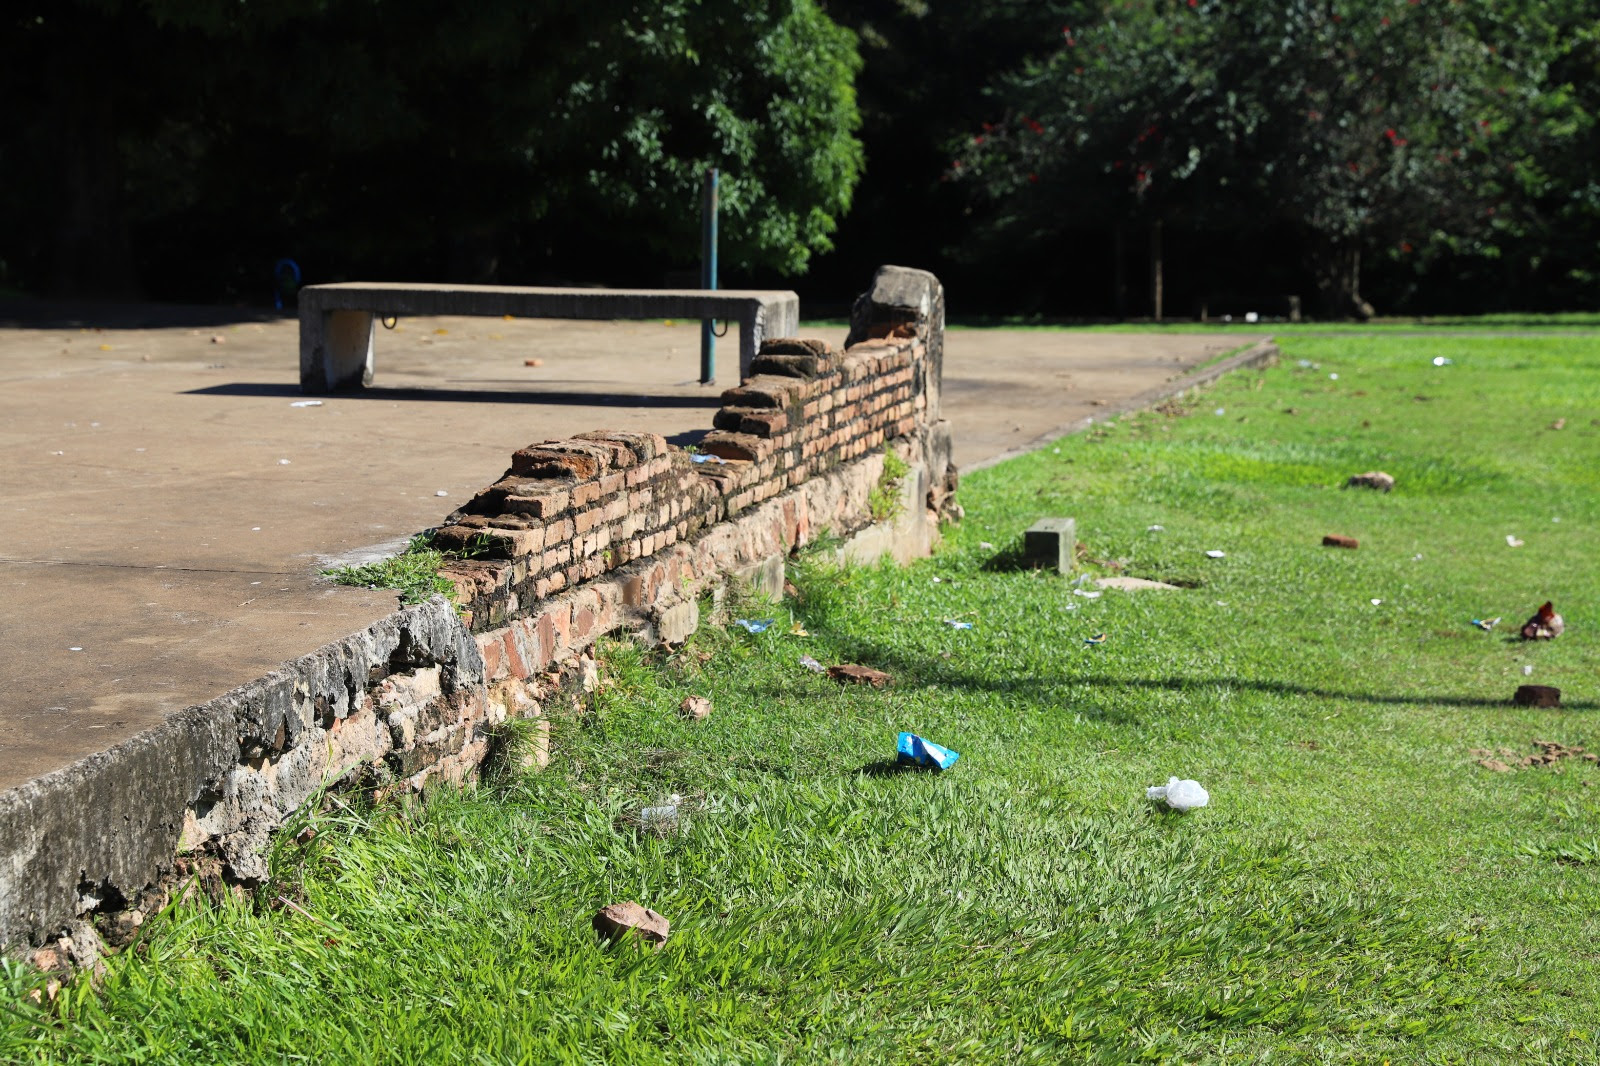 Caça ao tesouro promovida por influencer danifica estrutura e patrimônio cultural do Parque Cimba em Araguaína